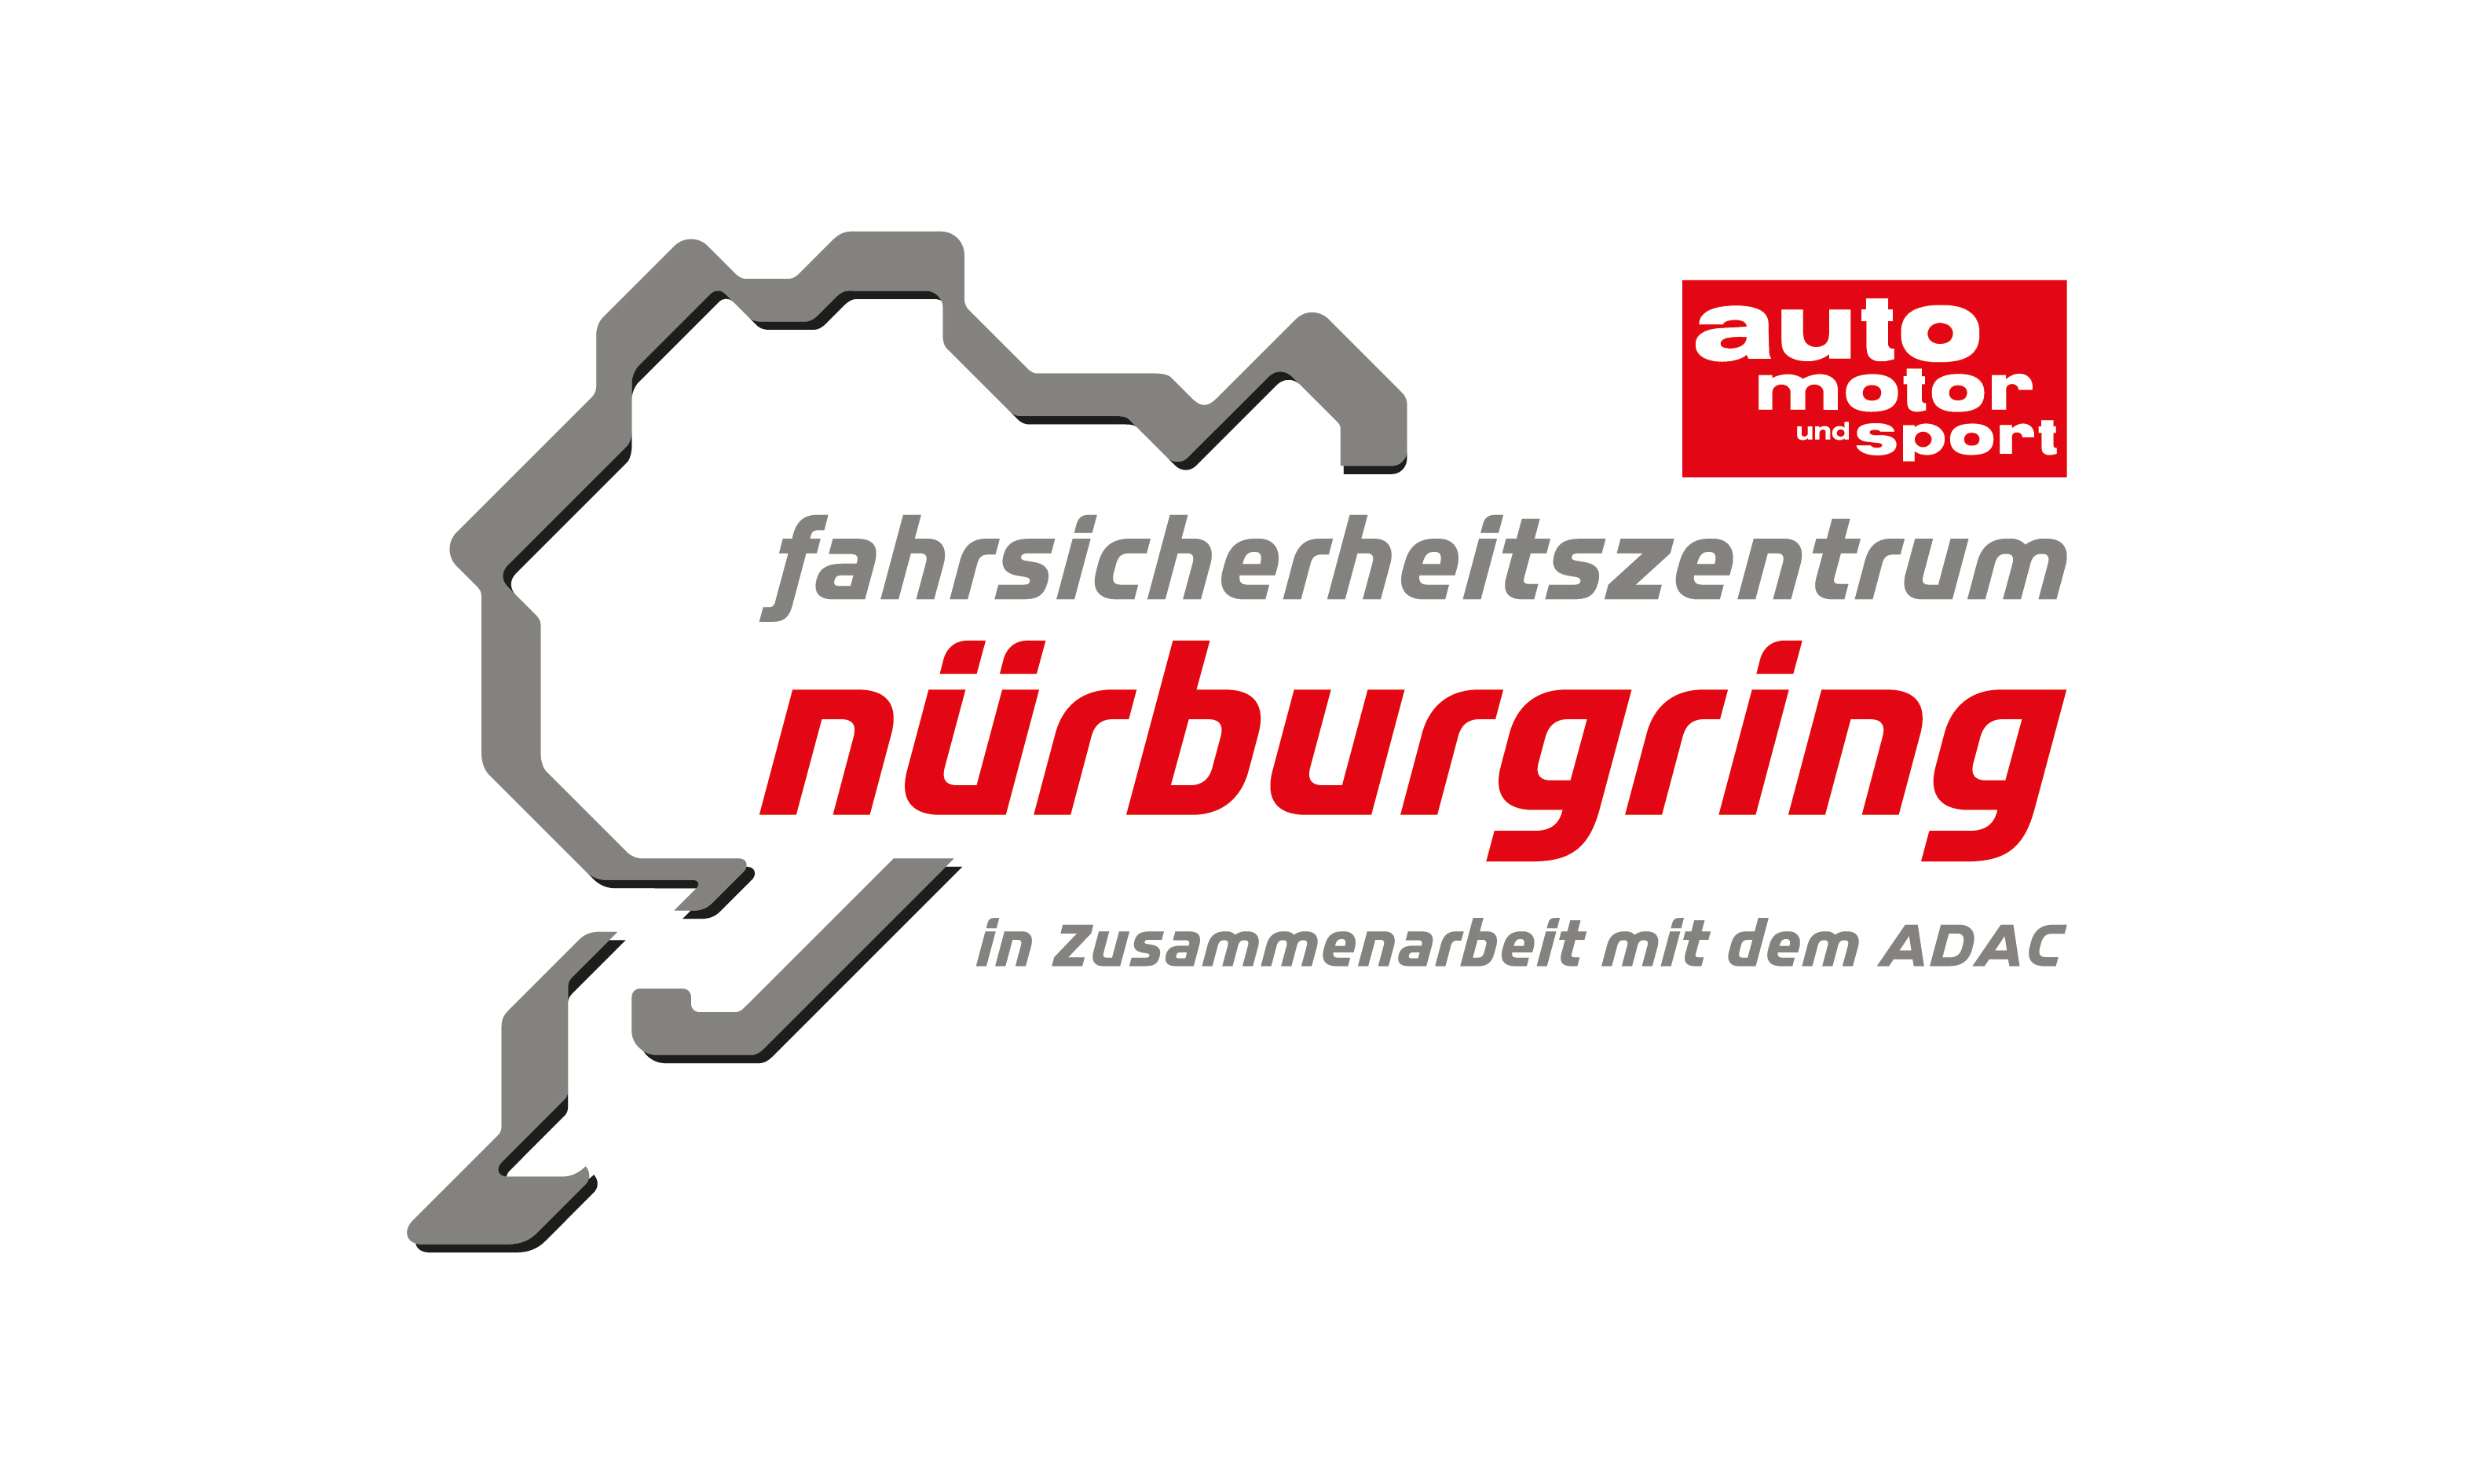 auto motor und sport - Fahrsicherheitszentrum am Nürburgring GmbH & Co.KG